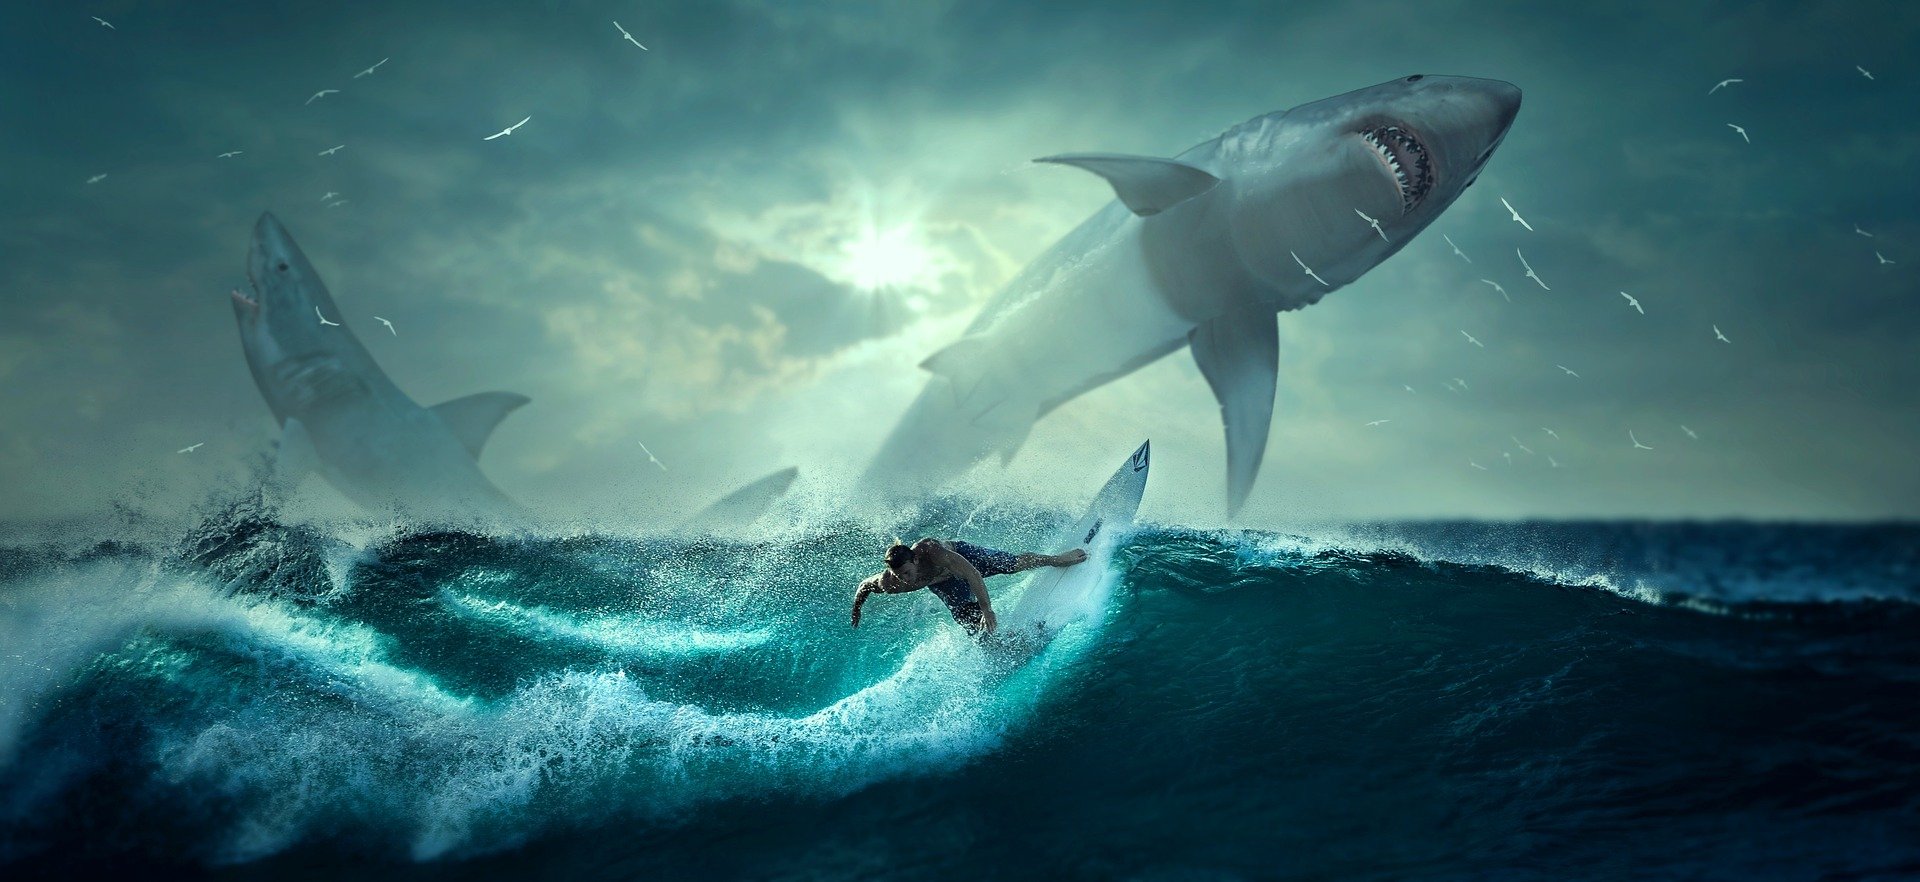 Marele rechin alb ar putea ataca omul din greșeală, deoarece seamănă cu hrana lor